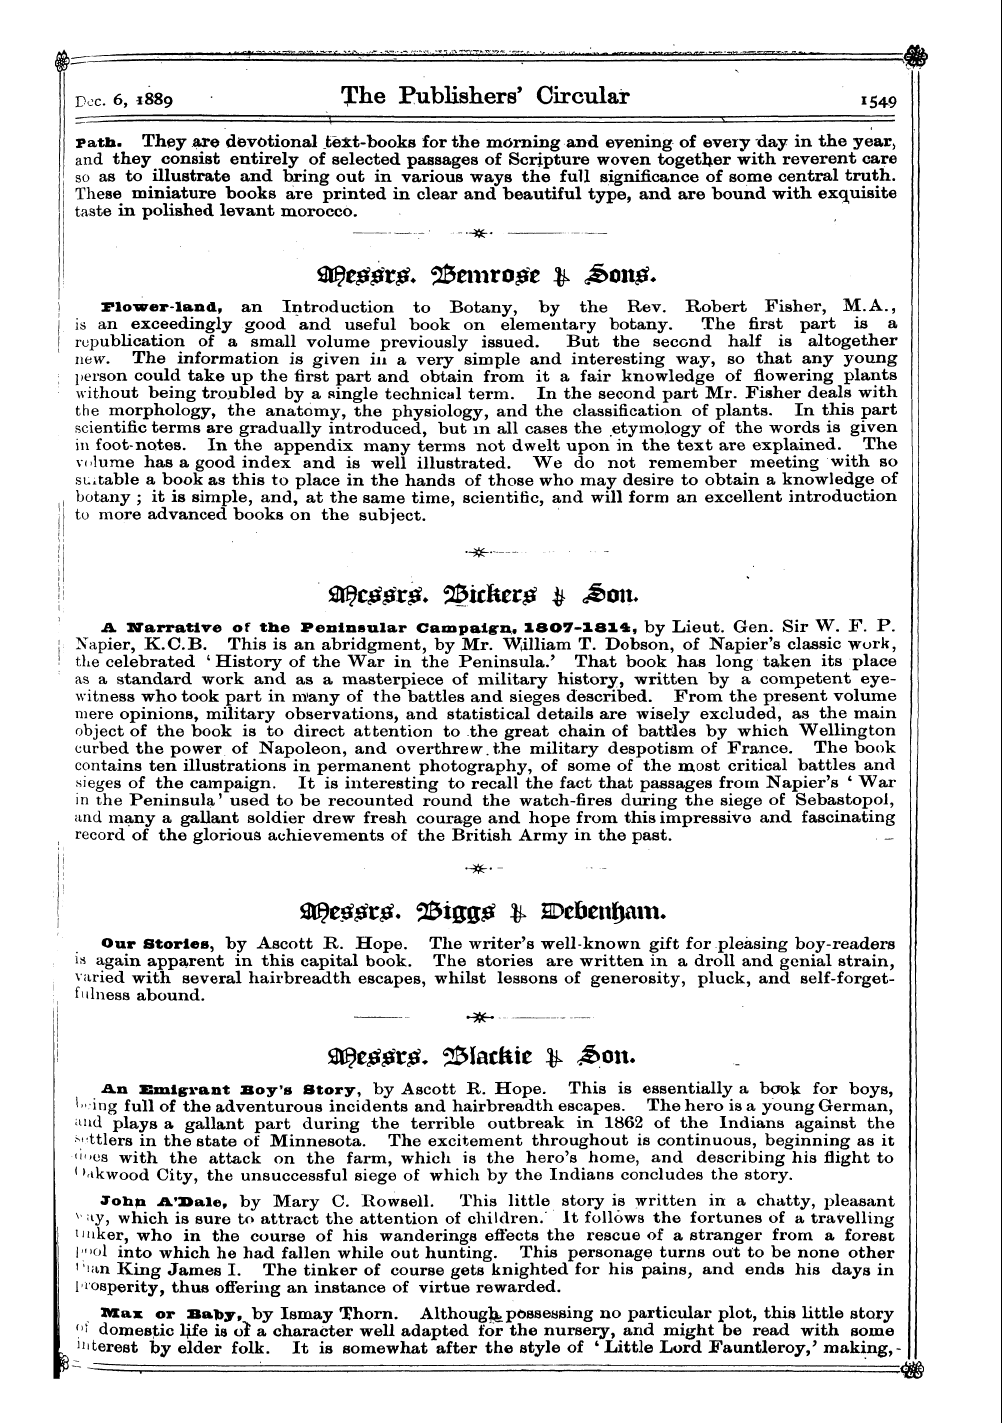 Publishers’ Circular (1880-1890): jS F Y, 1st edition - Ar01501